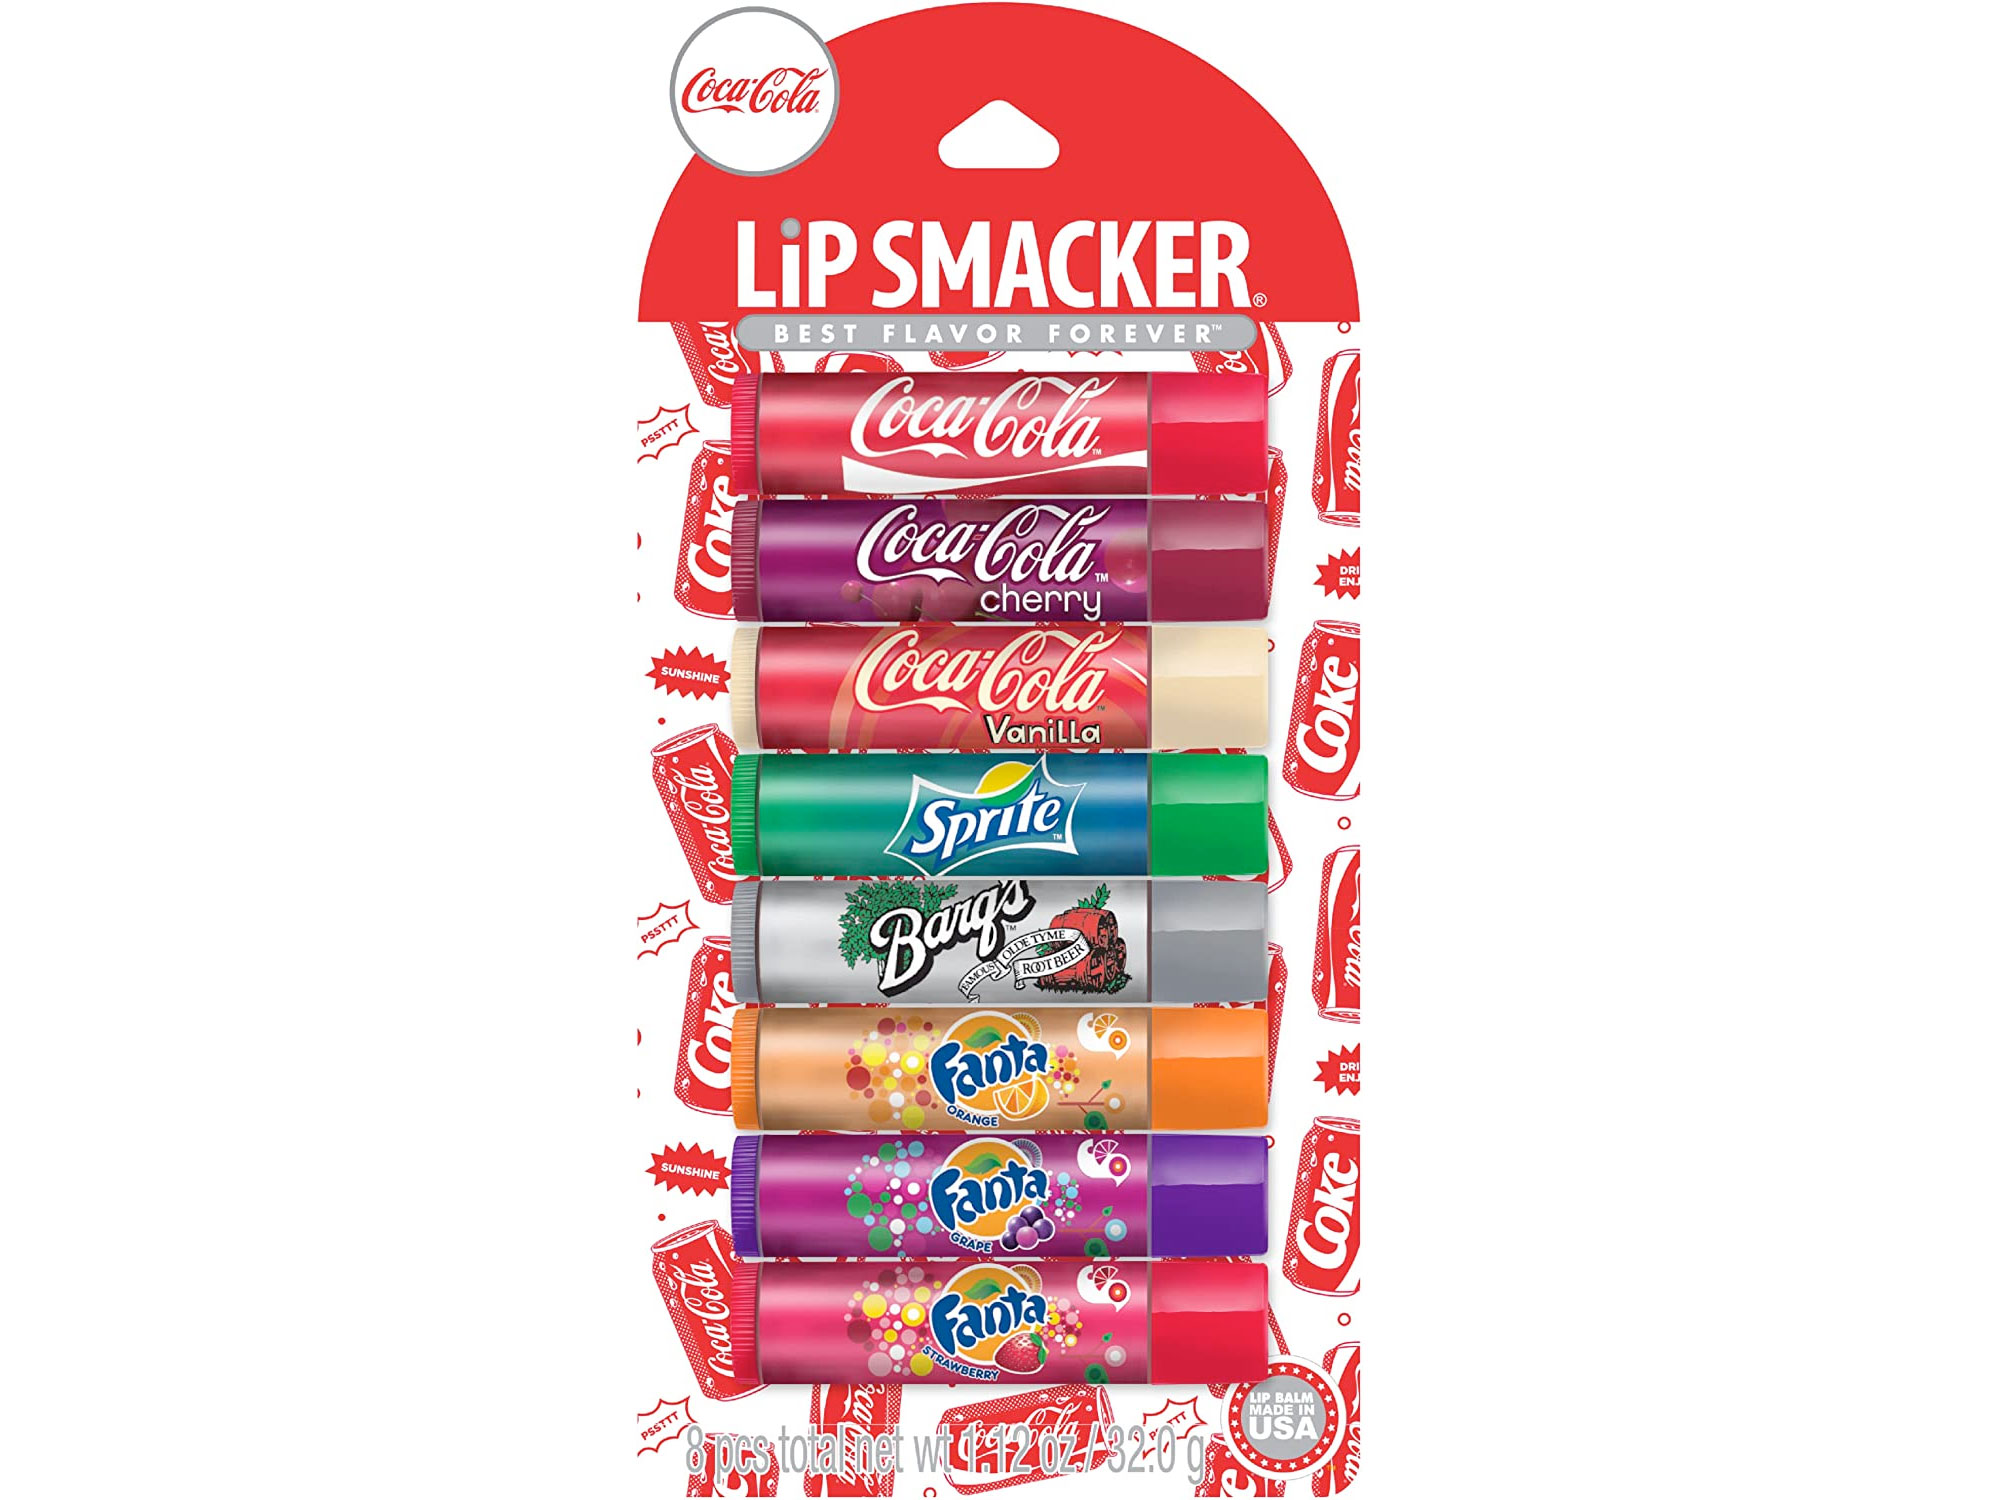 Amazon：Lip Smacker Coca-Cola Party Pack Lip Glosses (8 Count)只賣$9.60